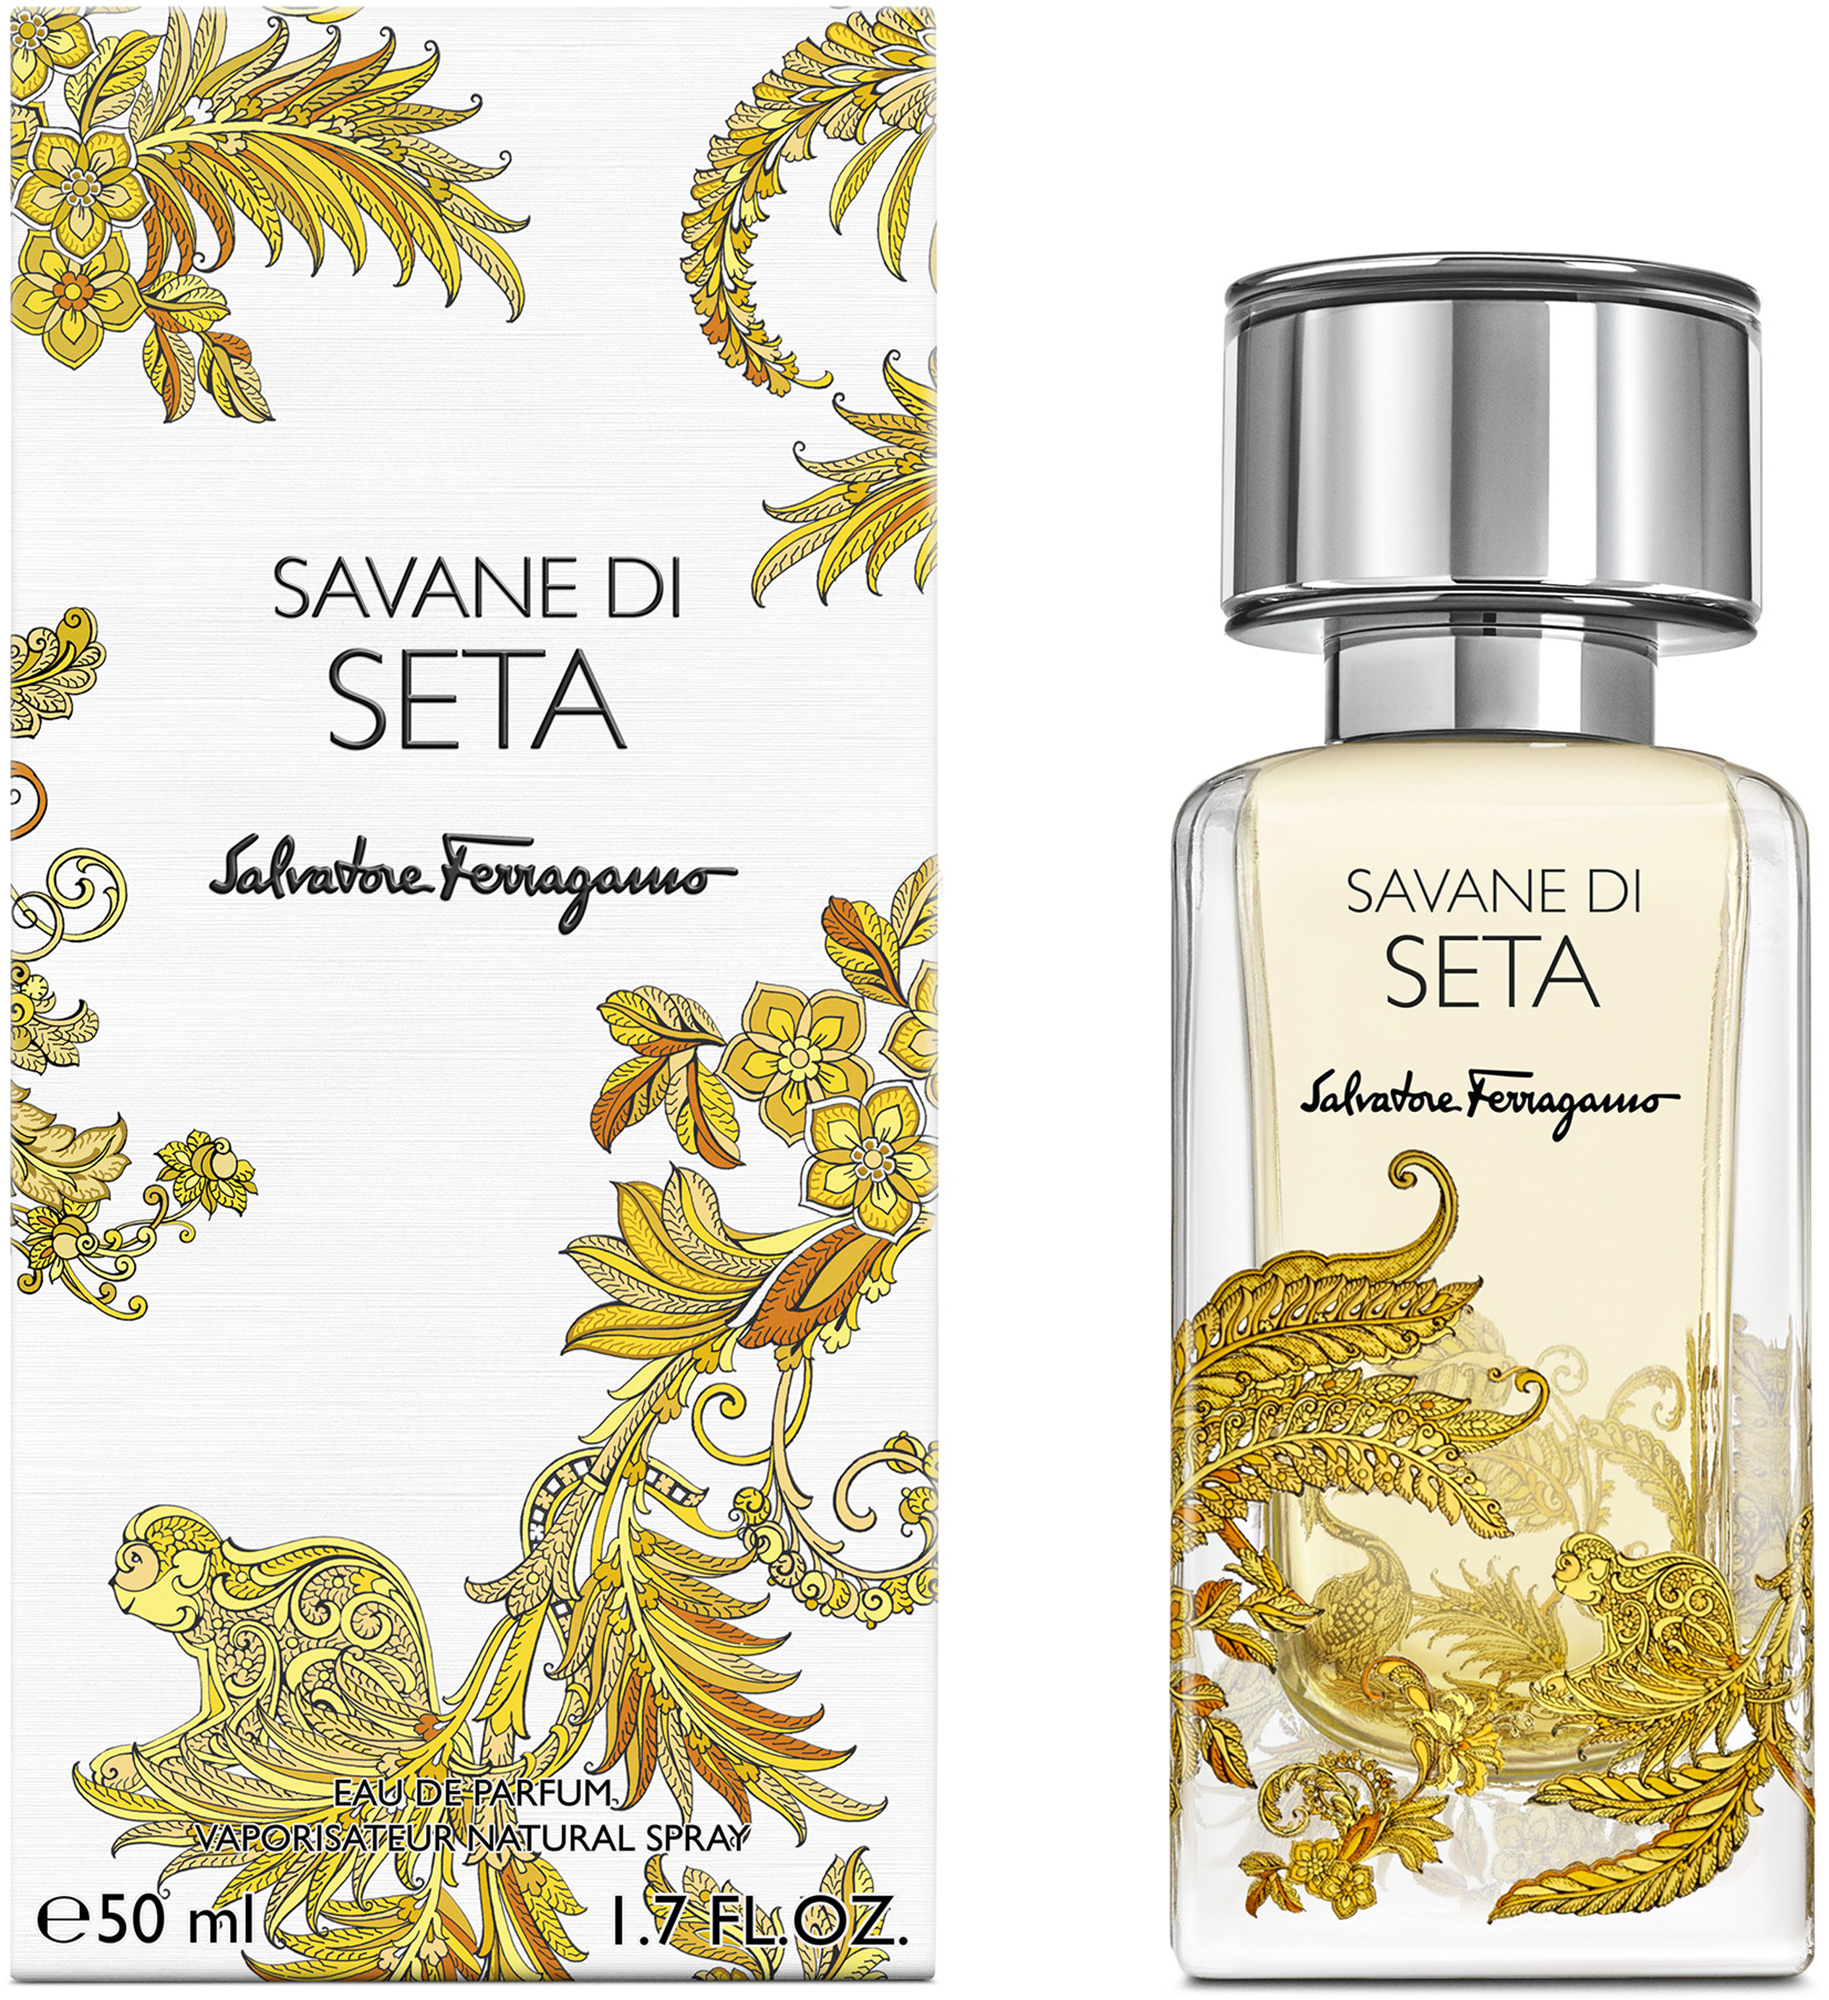 Salvatore Ferragamo Savane di Seta Eau de Parfum 50 ml